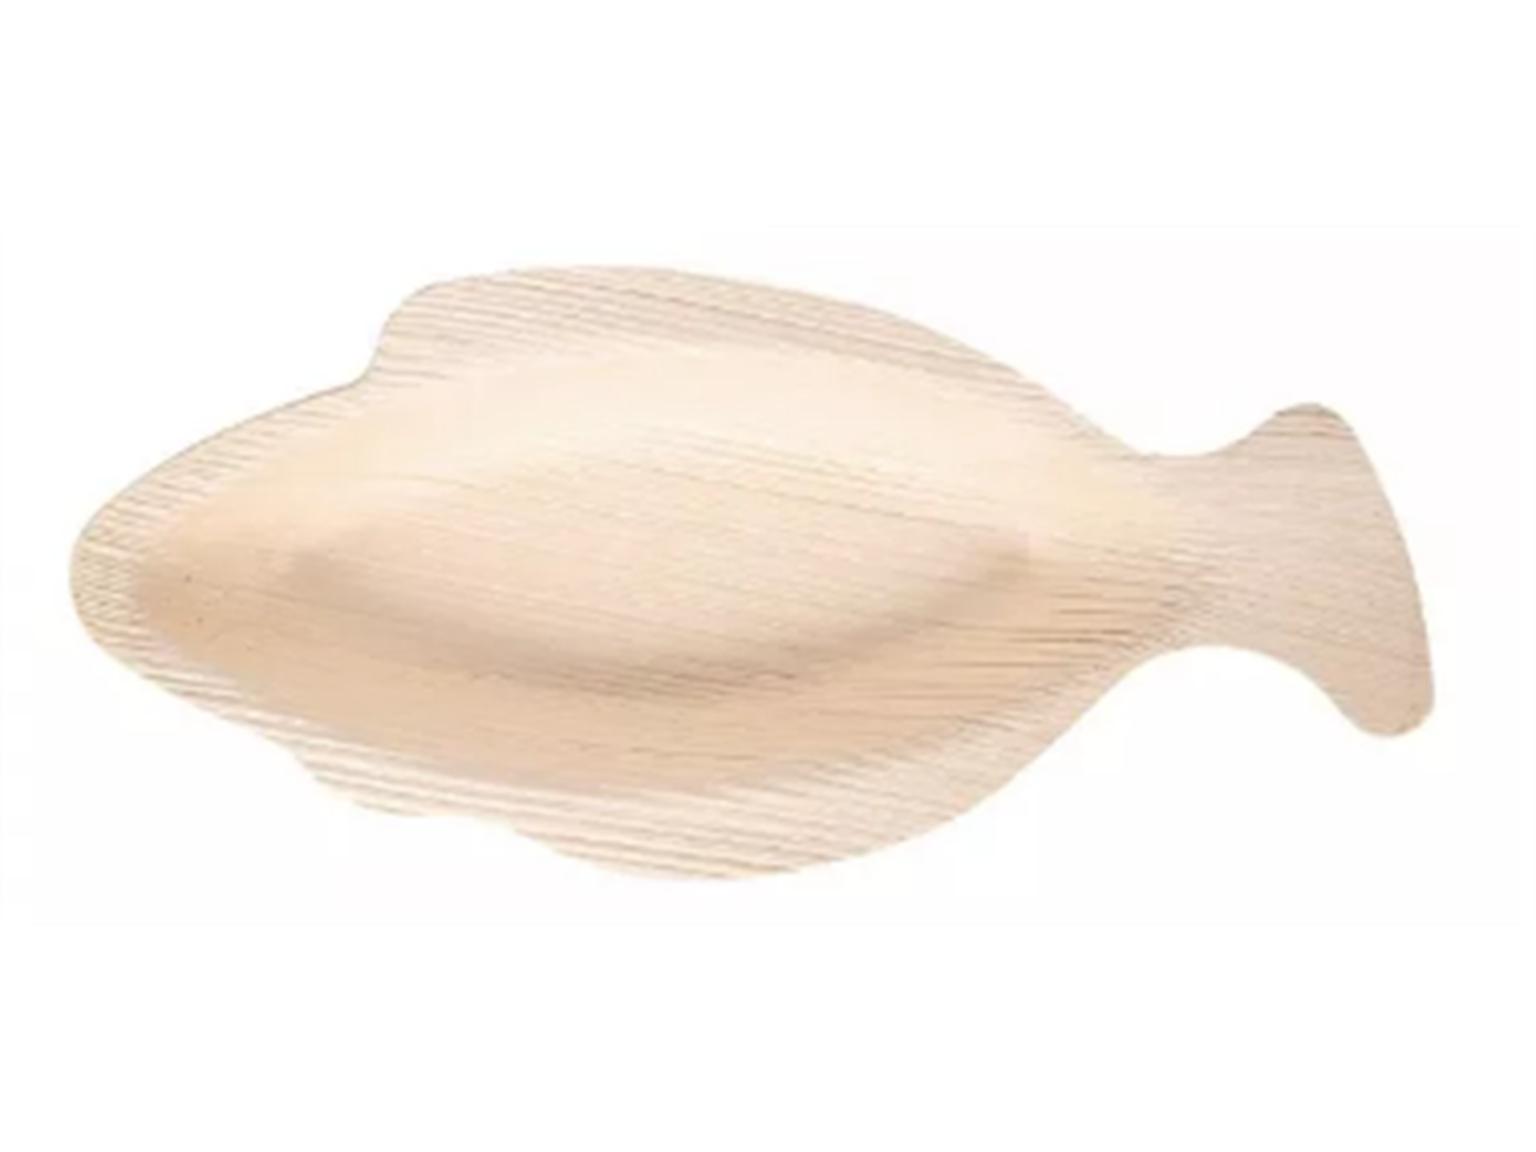 SCHALE PALMBLATT  Fisch 16 x 16 x 2.8 cm